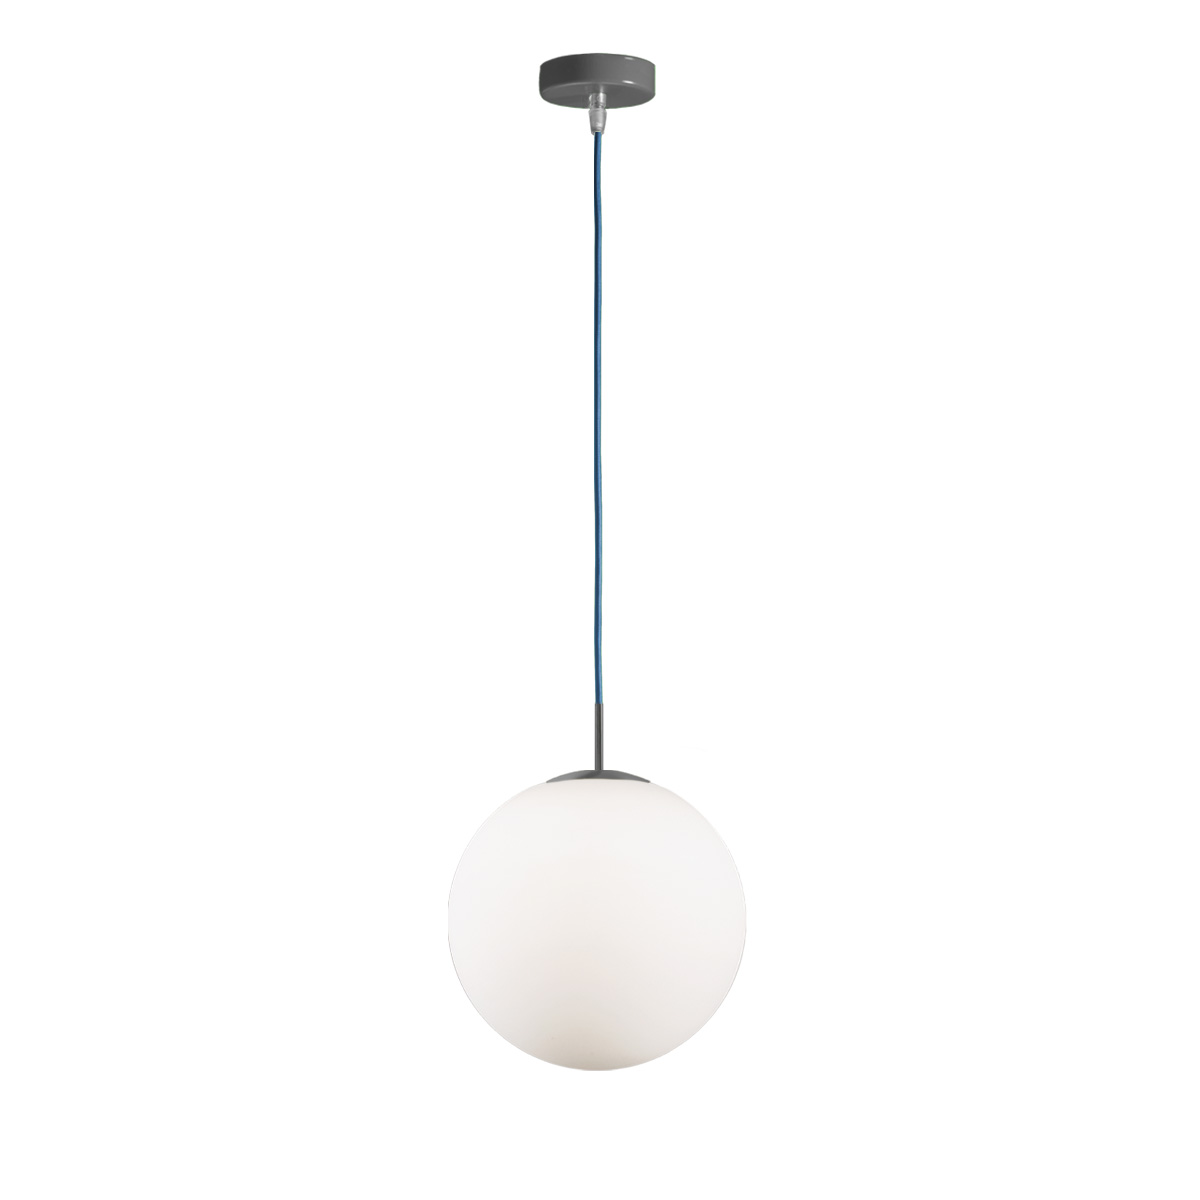 Μοντέρνο φωτιστικό μπάλα ΜΠΑΛΕΣ modern sphere pendant lighting